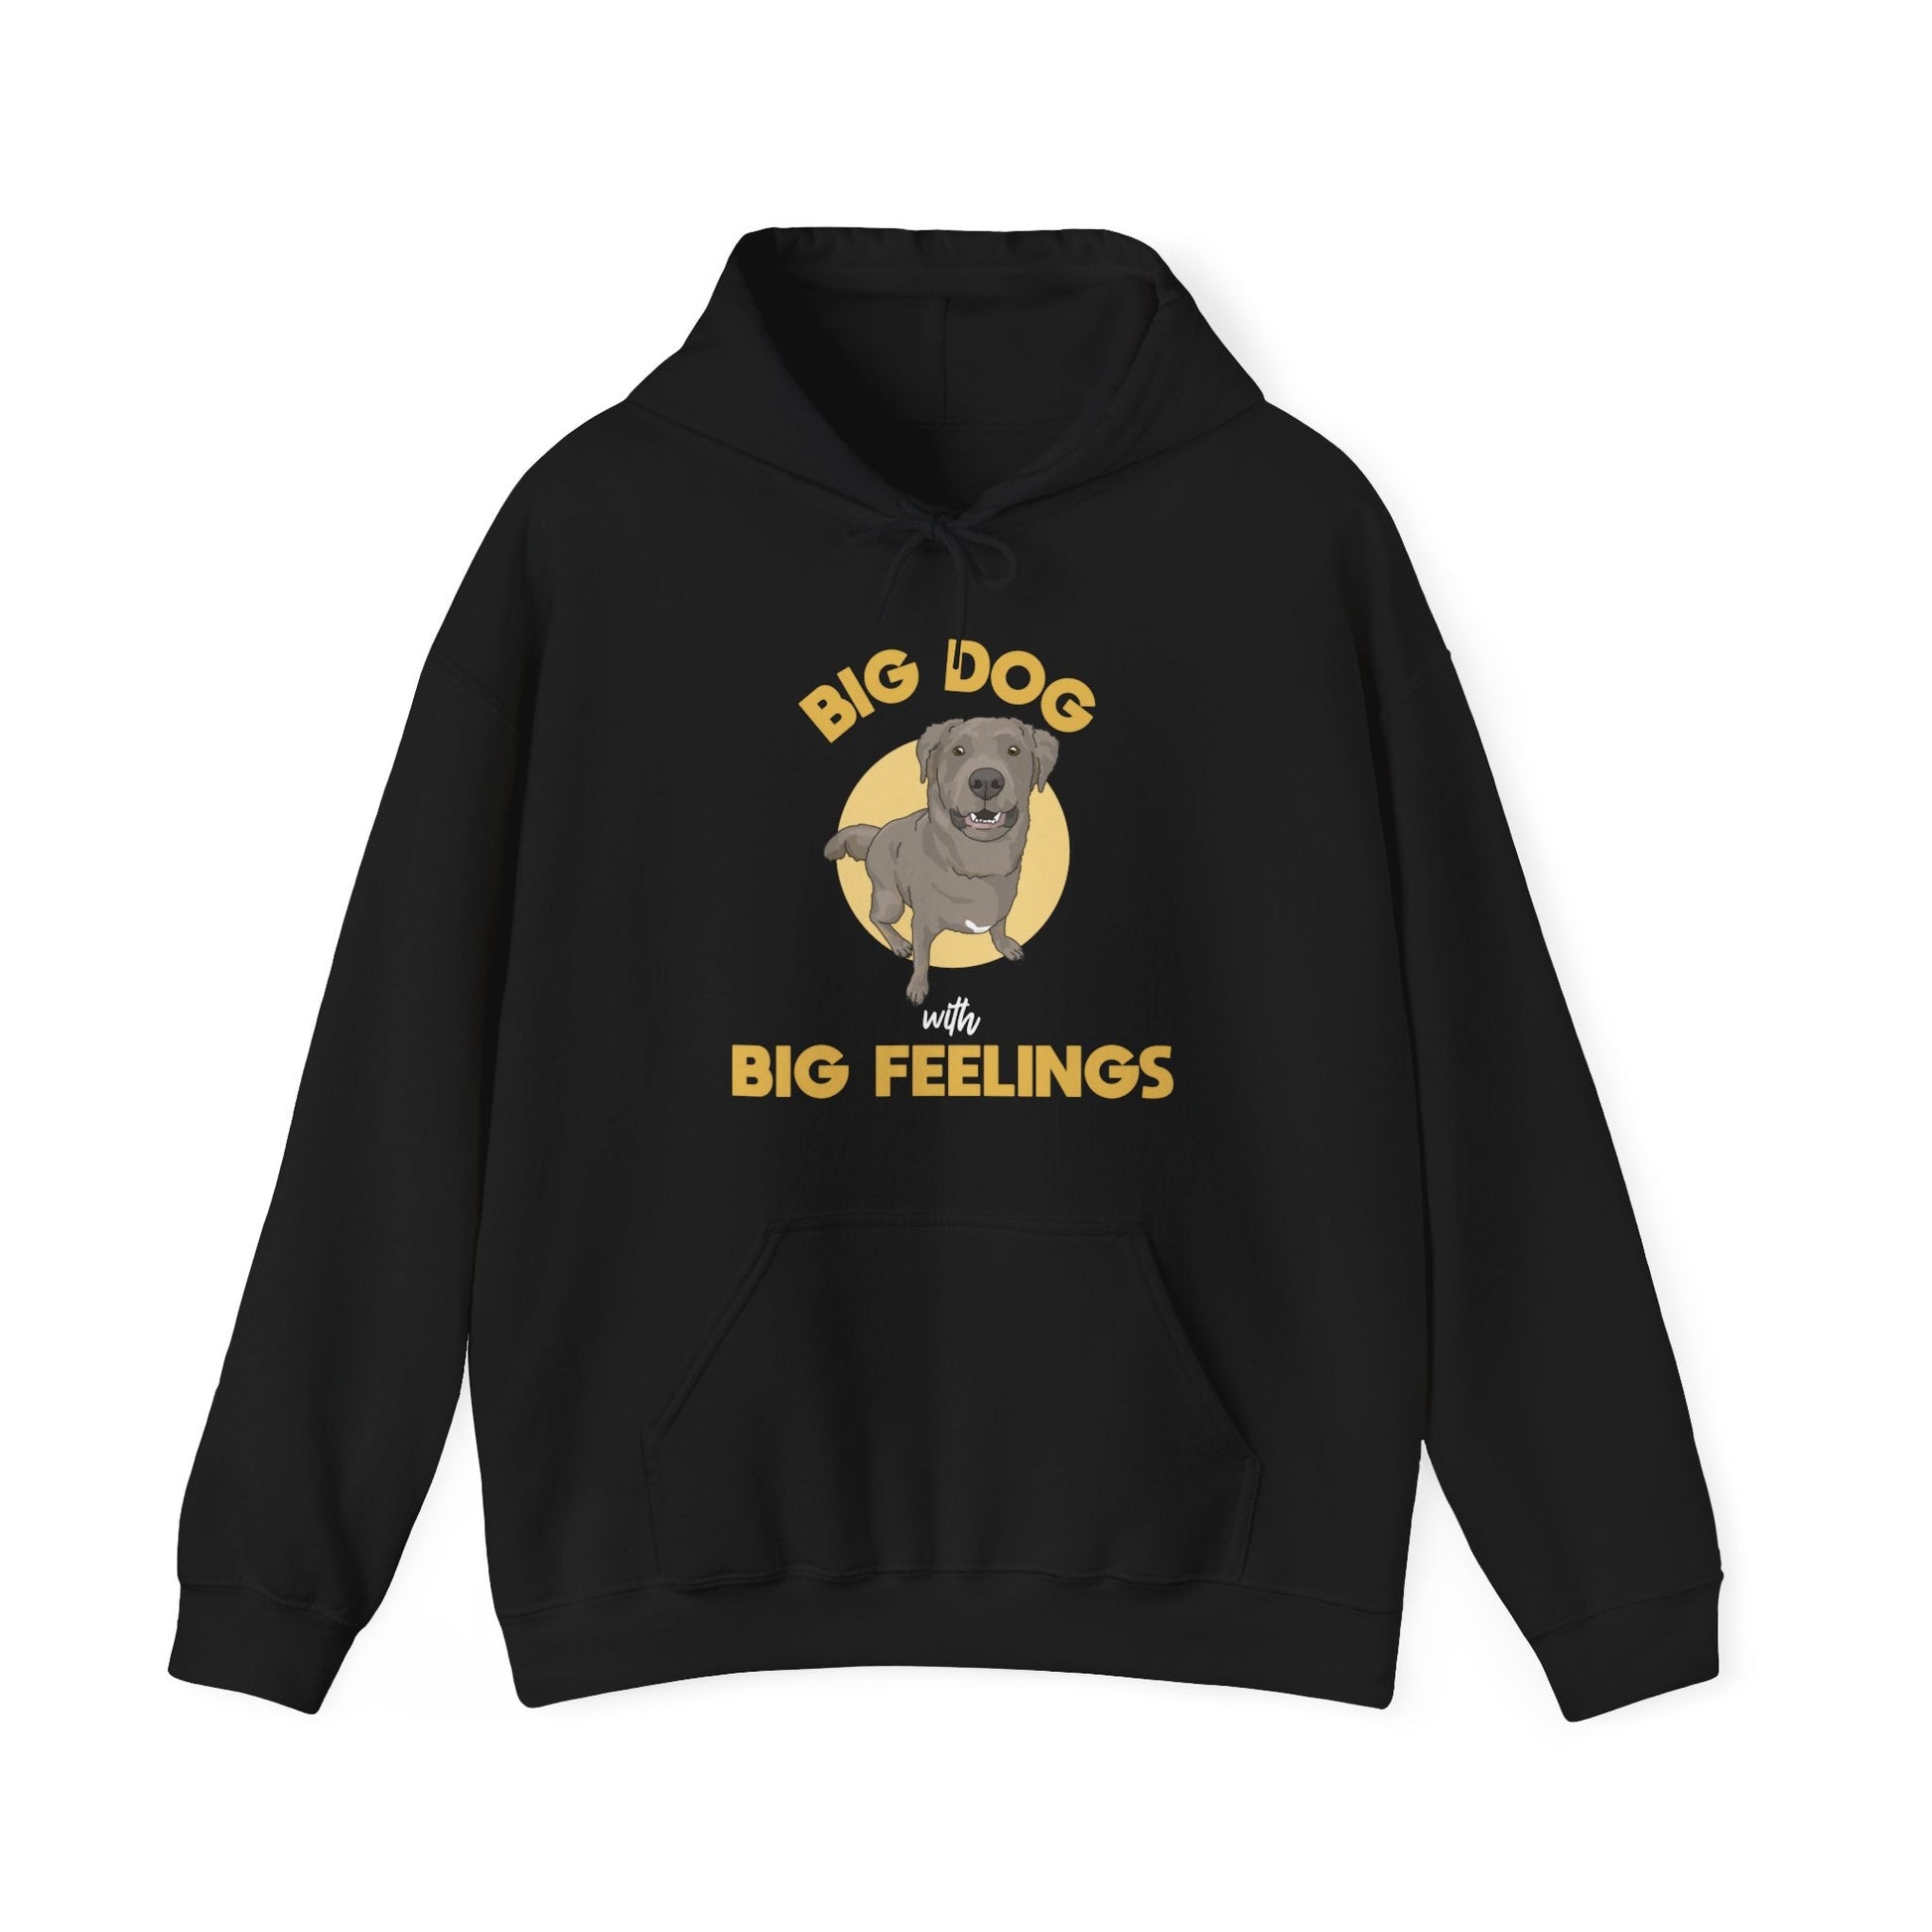 Big Dog With Big Feelings | Hooded Sweatshirt - Detezi Designs-57420134880827421961